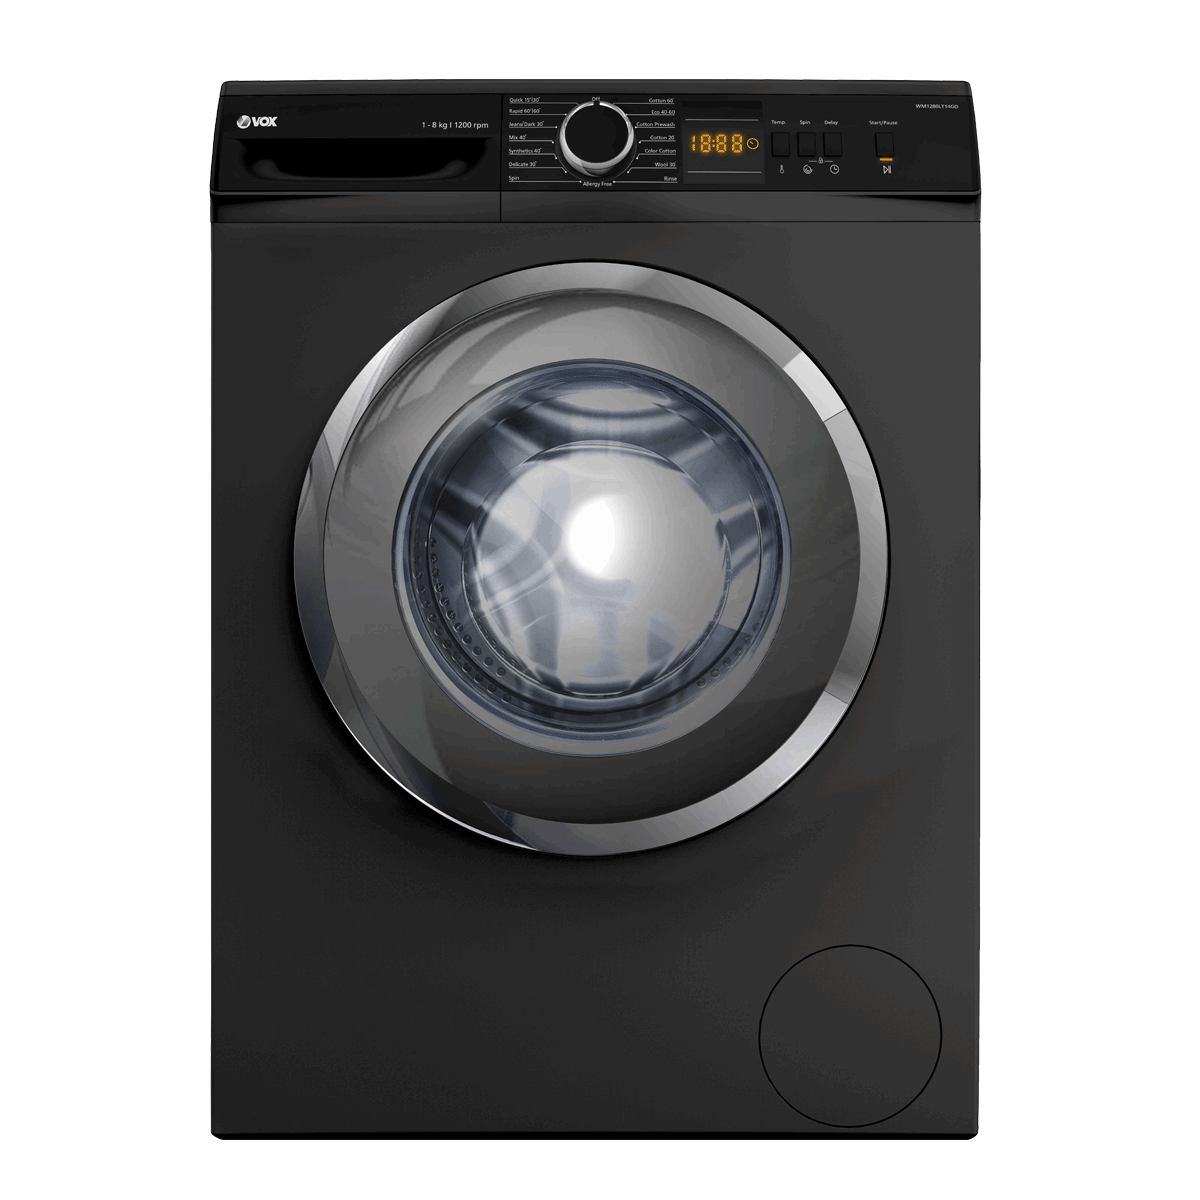 Washing machine WM1280-LT14GD 